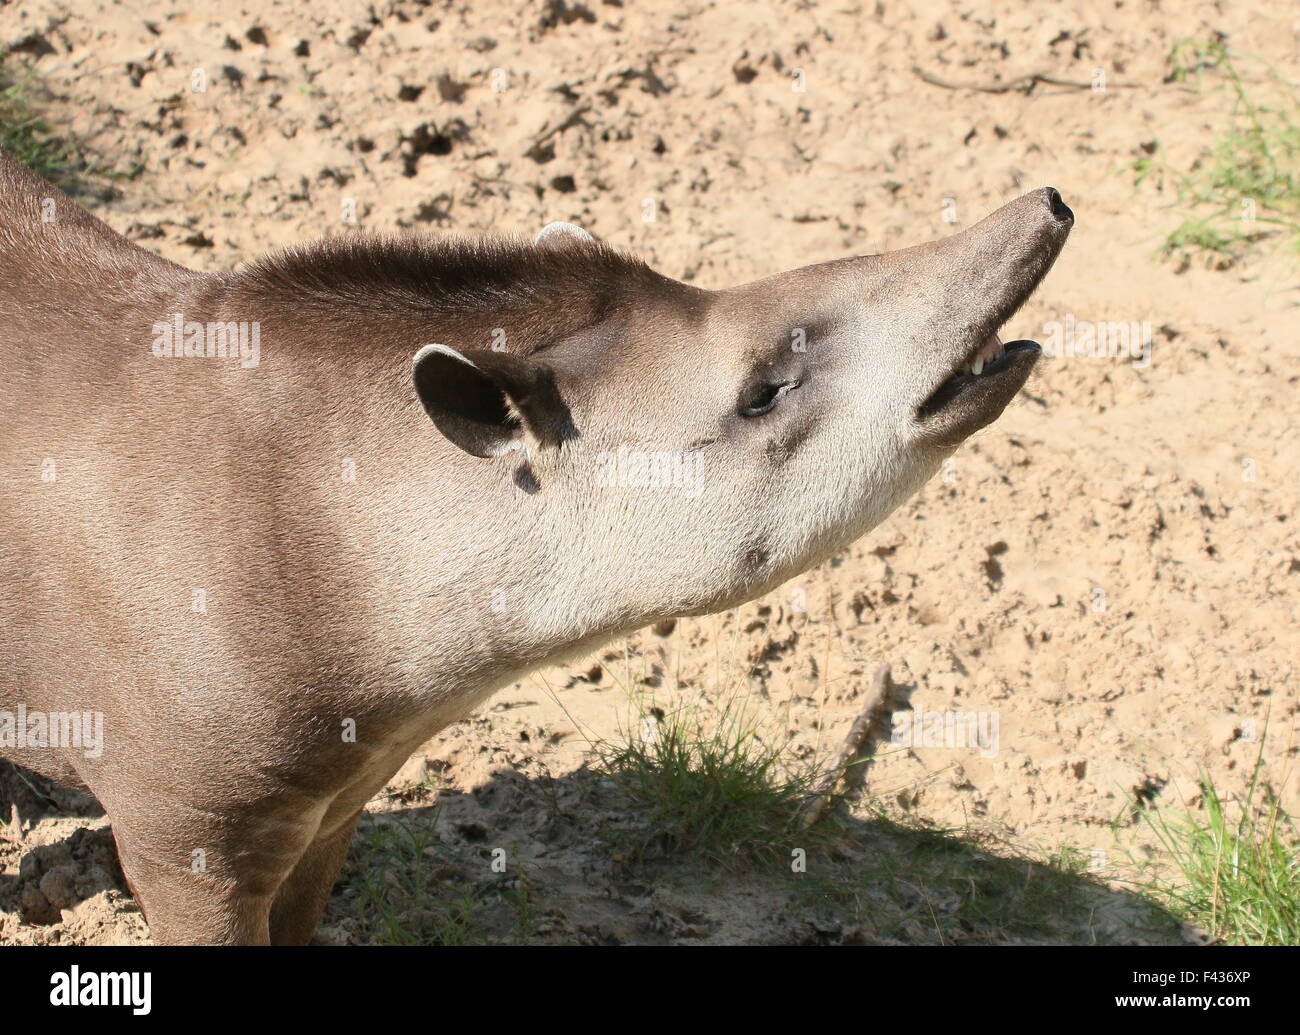 South American  Lowland Tapir or Brazilian Tapir (Tapirus terrestris) showing his mouth and large proboscis Stock Photo